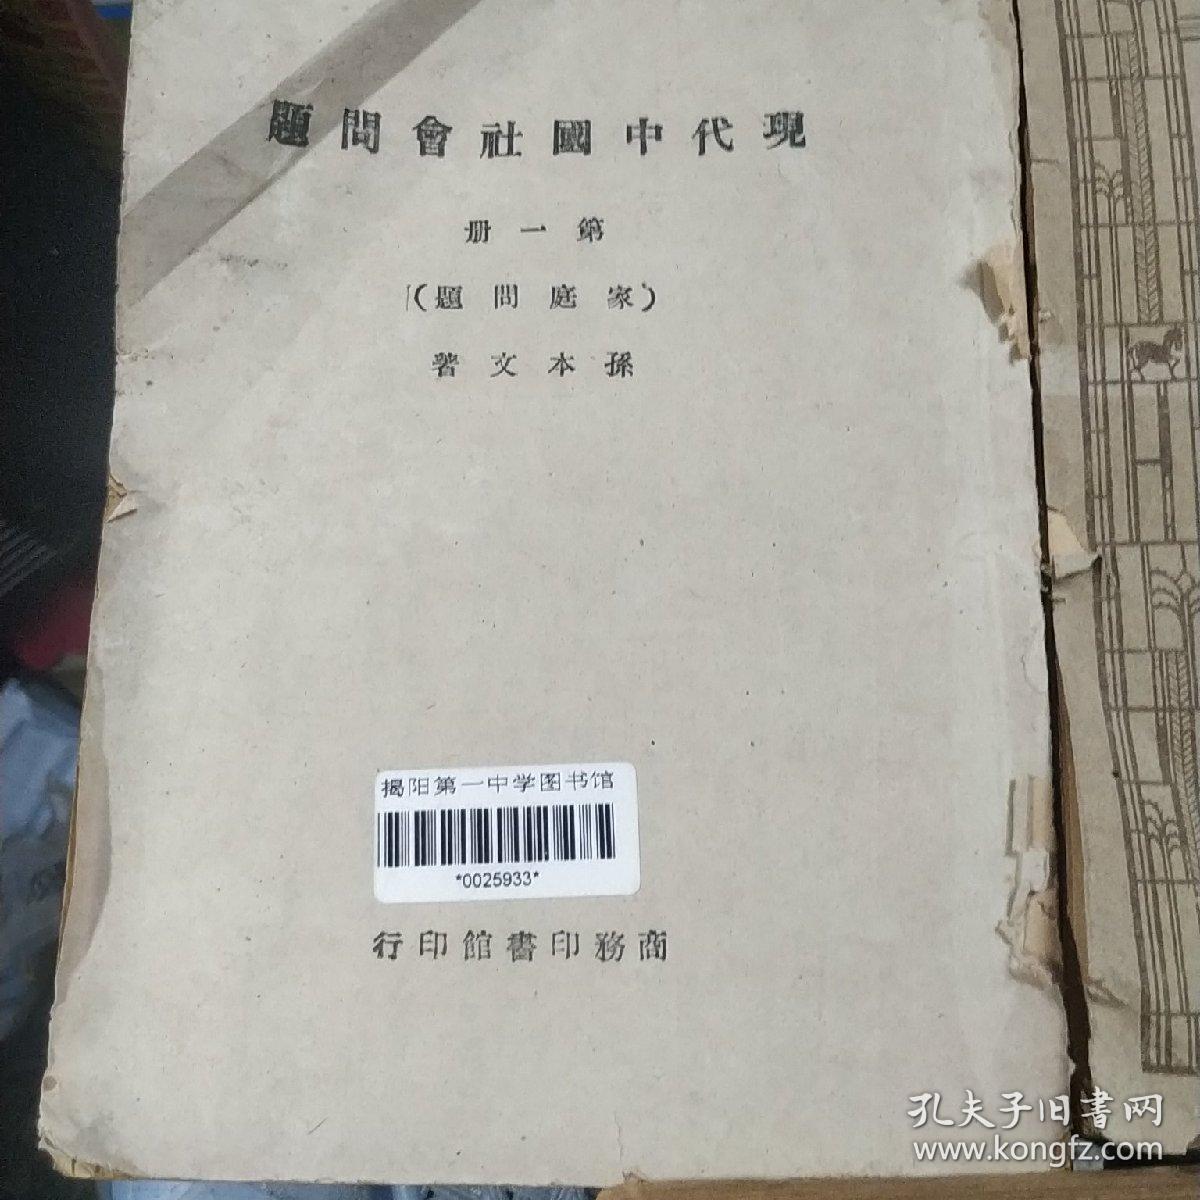 现代中国社会问题 第一册（家庭问题）第二册（人口问题）第三册（农村问题）3本合售均为馆藏图书